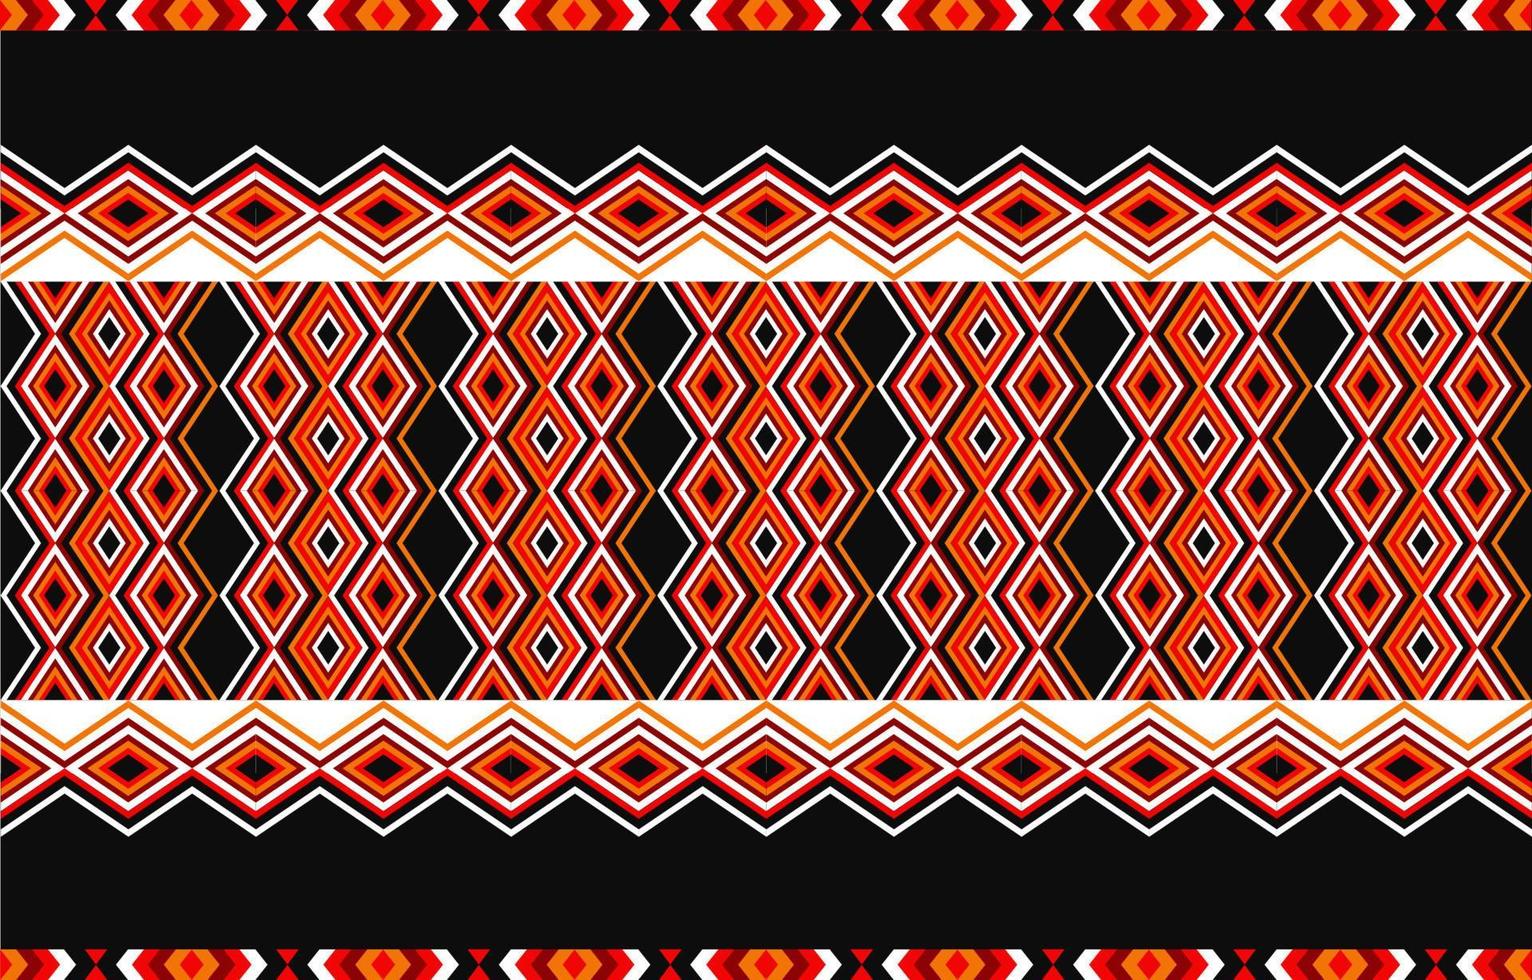 Amerikanisches Stammes-Ethno-Muster traditionelles Design für Teppich, Tapete, Verpackung, Batik, Stoff, Vorhang, Hintergrund, Kleidung, Vektor-Illustration-Stickerei-Stil. vektor